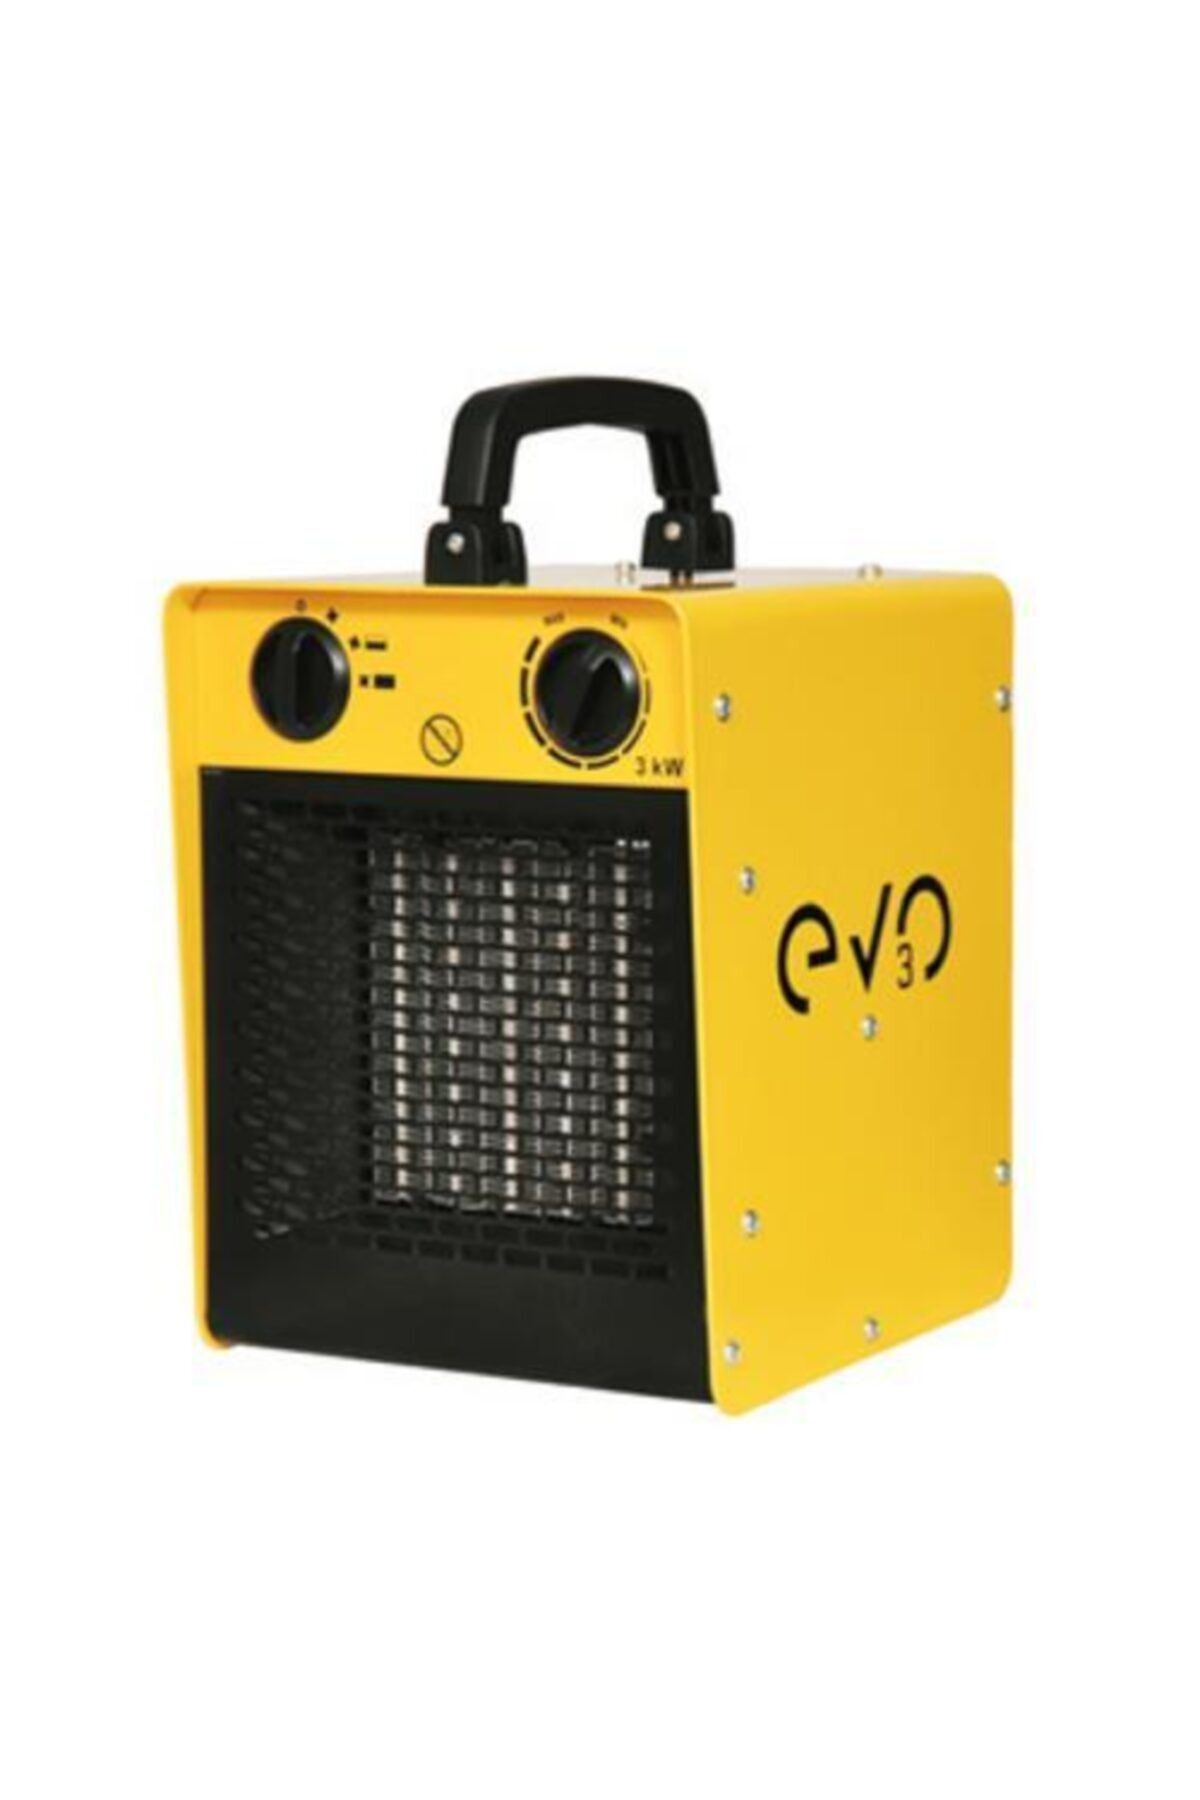 End Elektrik Evotech Evo 3 Elektrikli Fanlı Isıtıcı